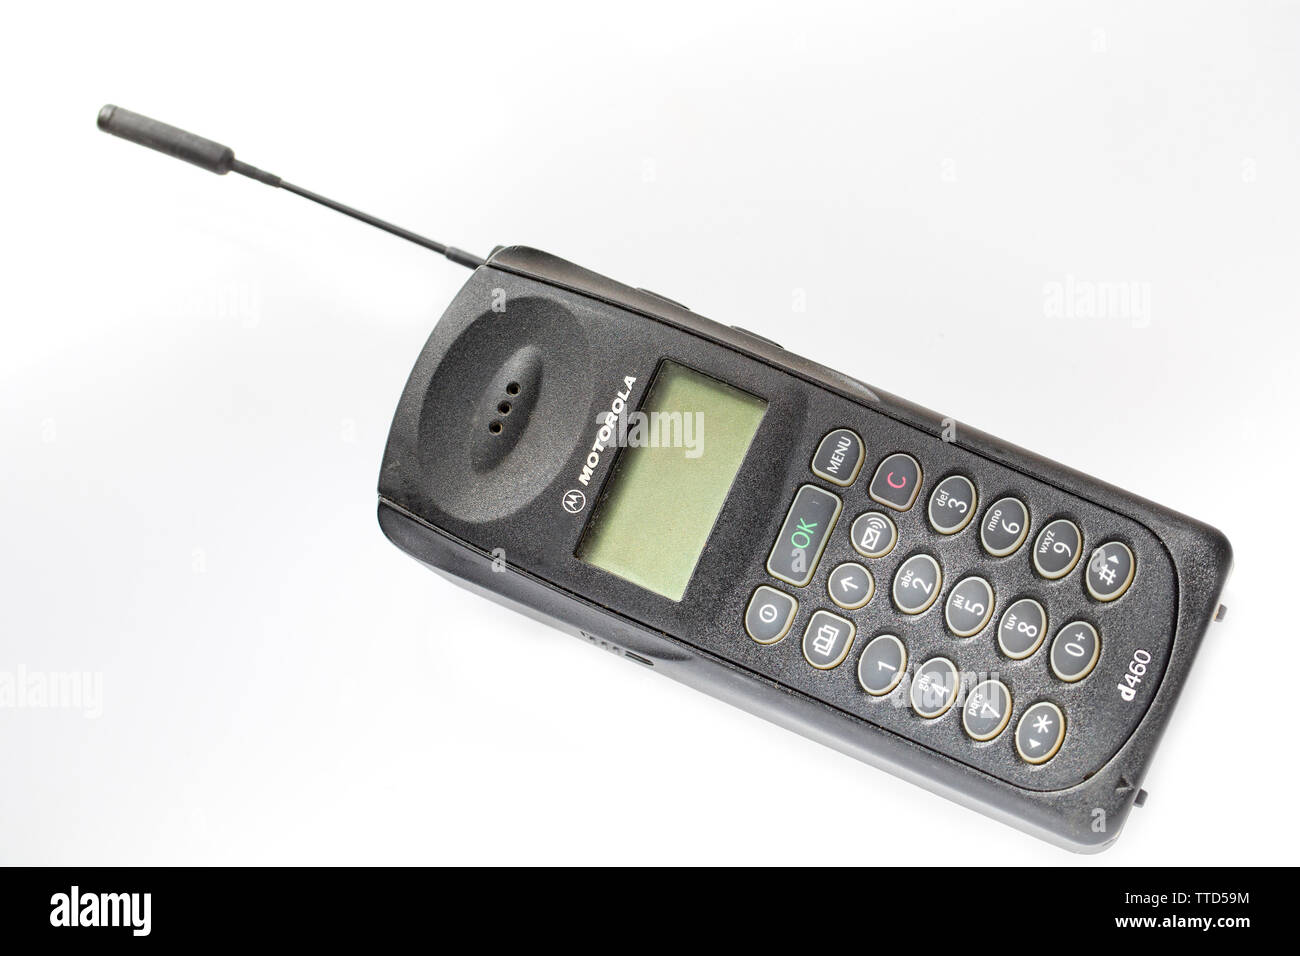 Un Motorola d460 da circa 1996/1997 con la sua antenna estesa. Fotografato su uno sfondo bianco. Inghilterra REGNO UNITO GB Foto Stock